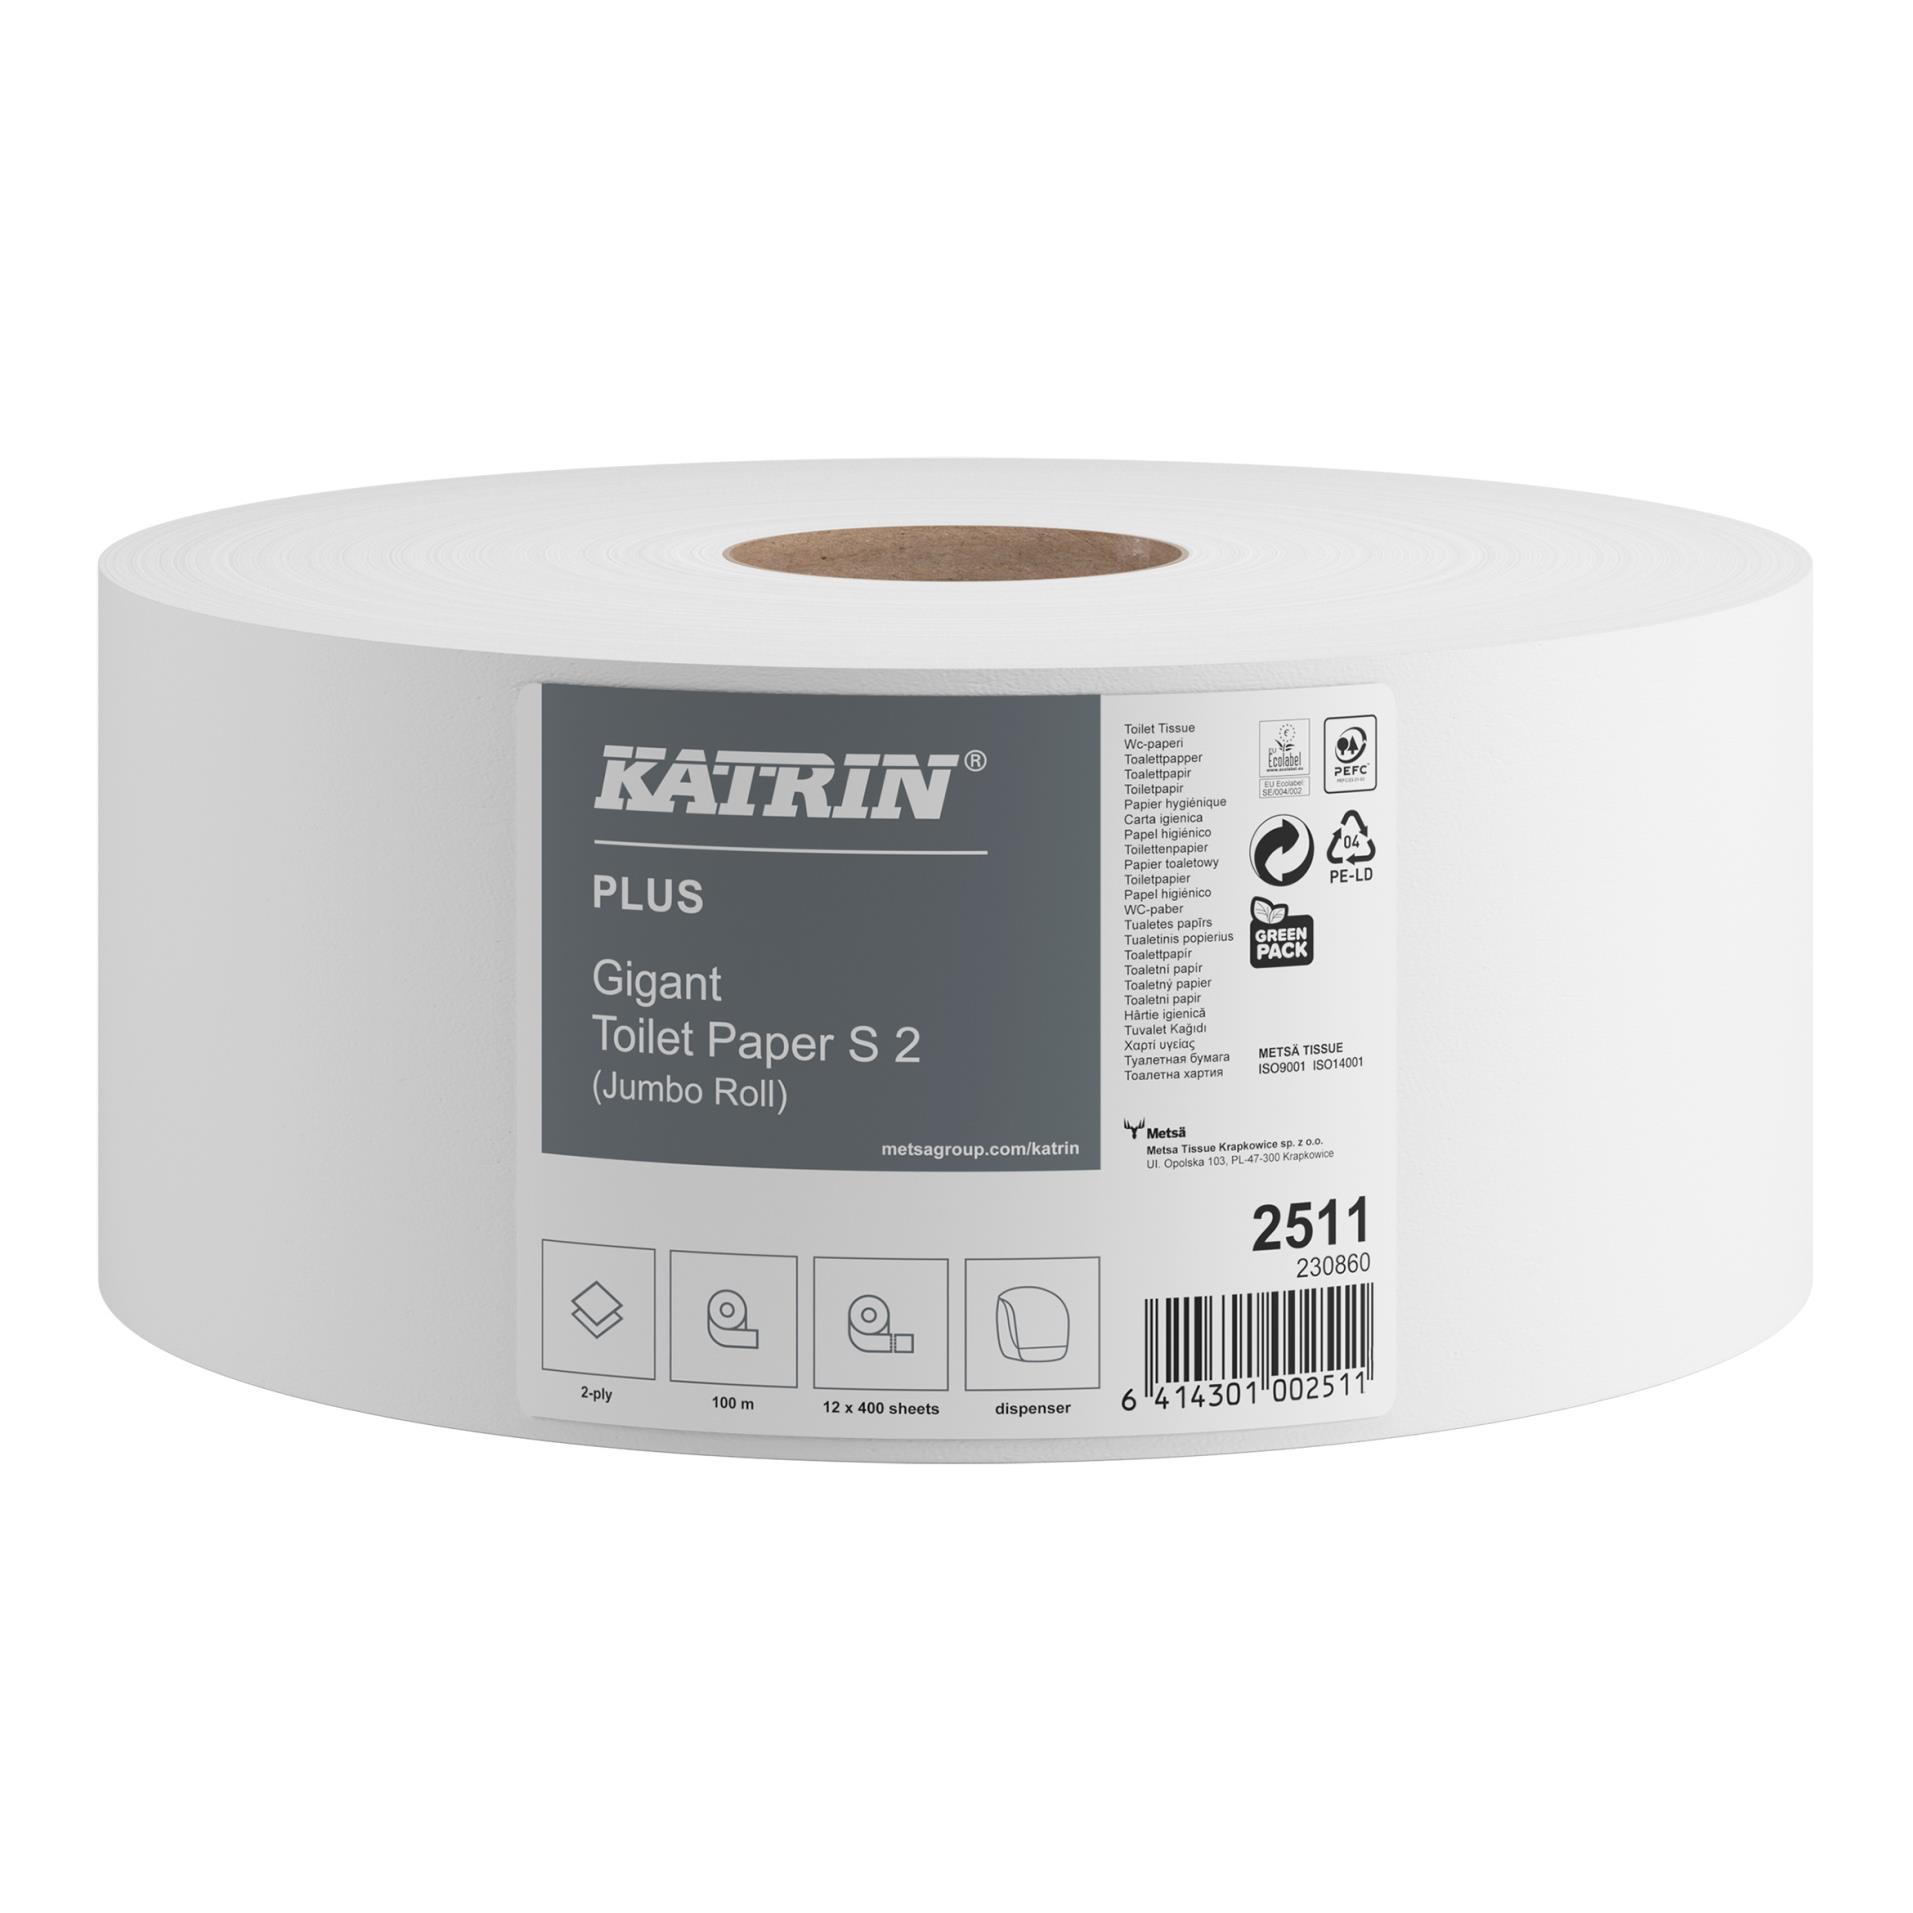 Toaletní papír Katrin Plus Gigant S2, bílý, 100 m